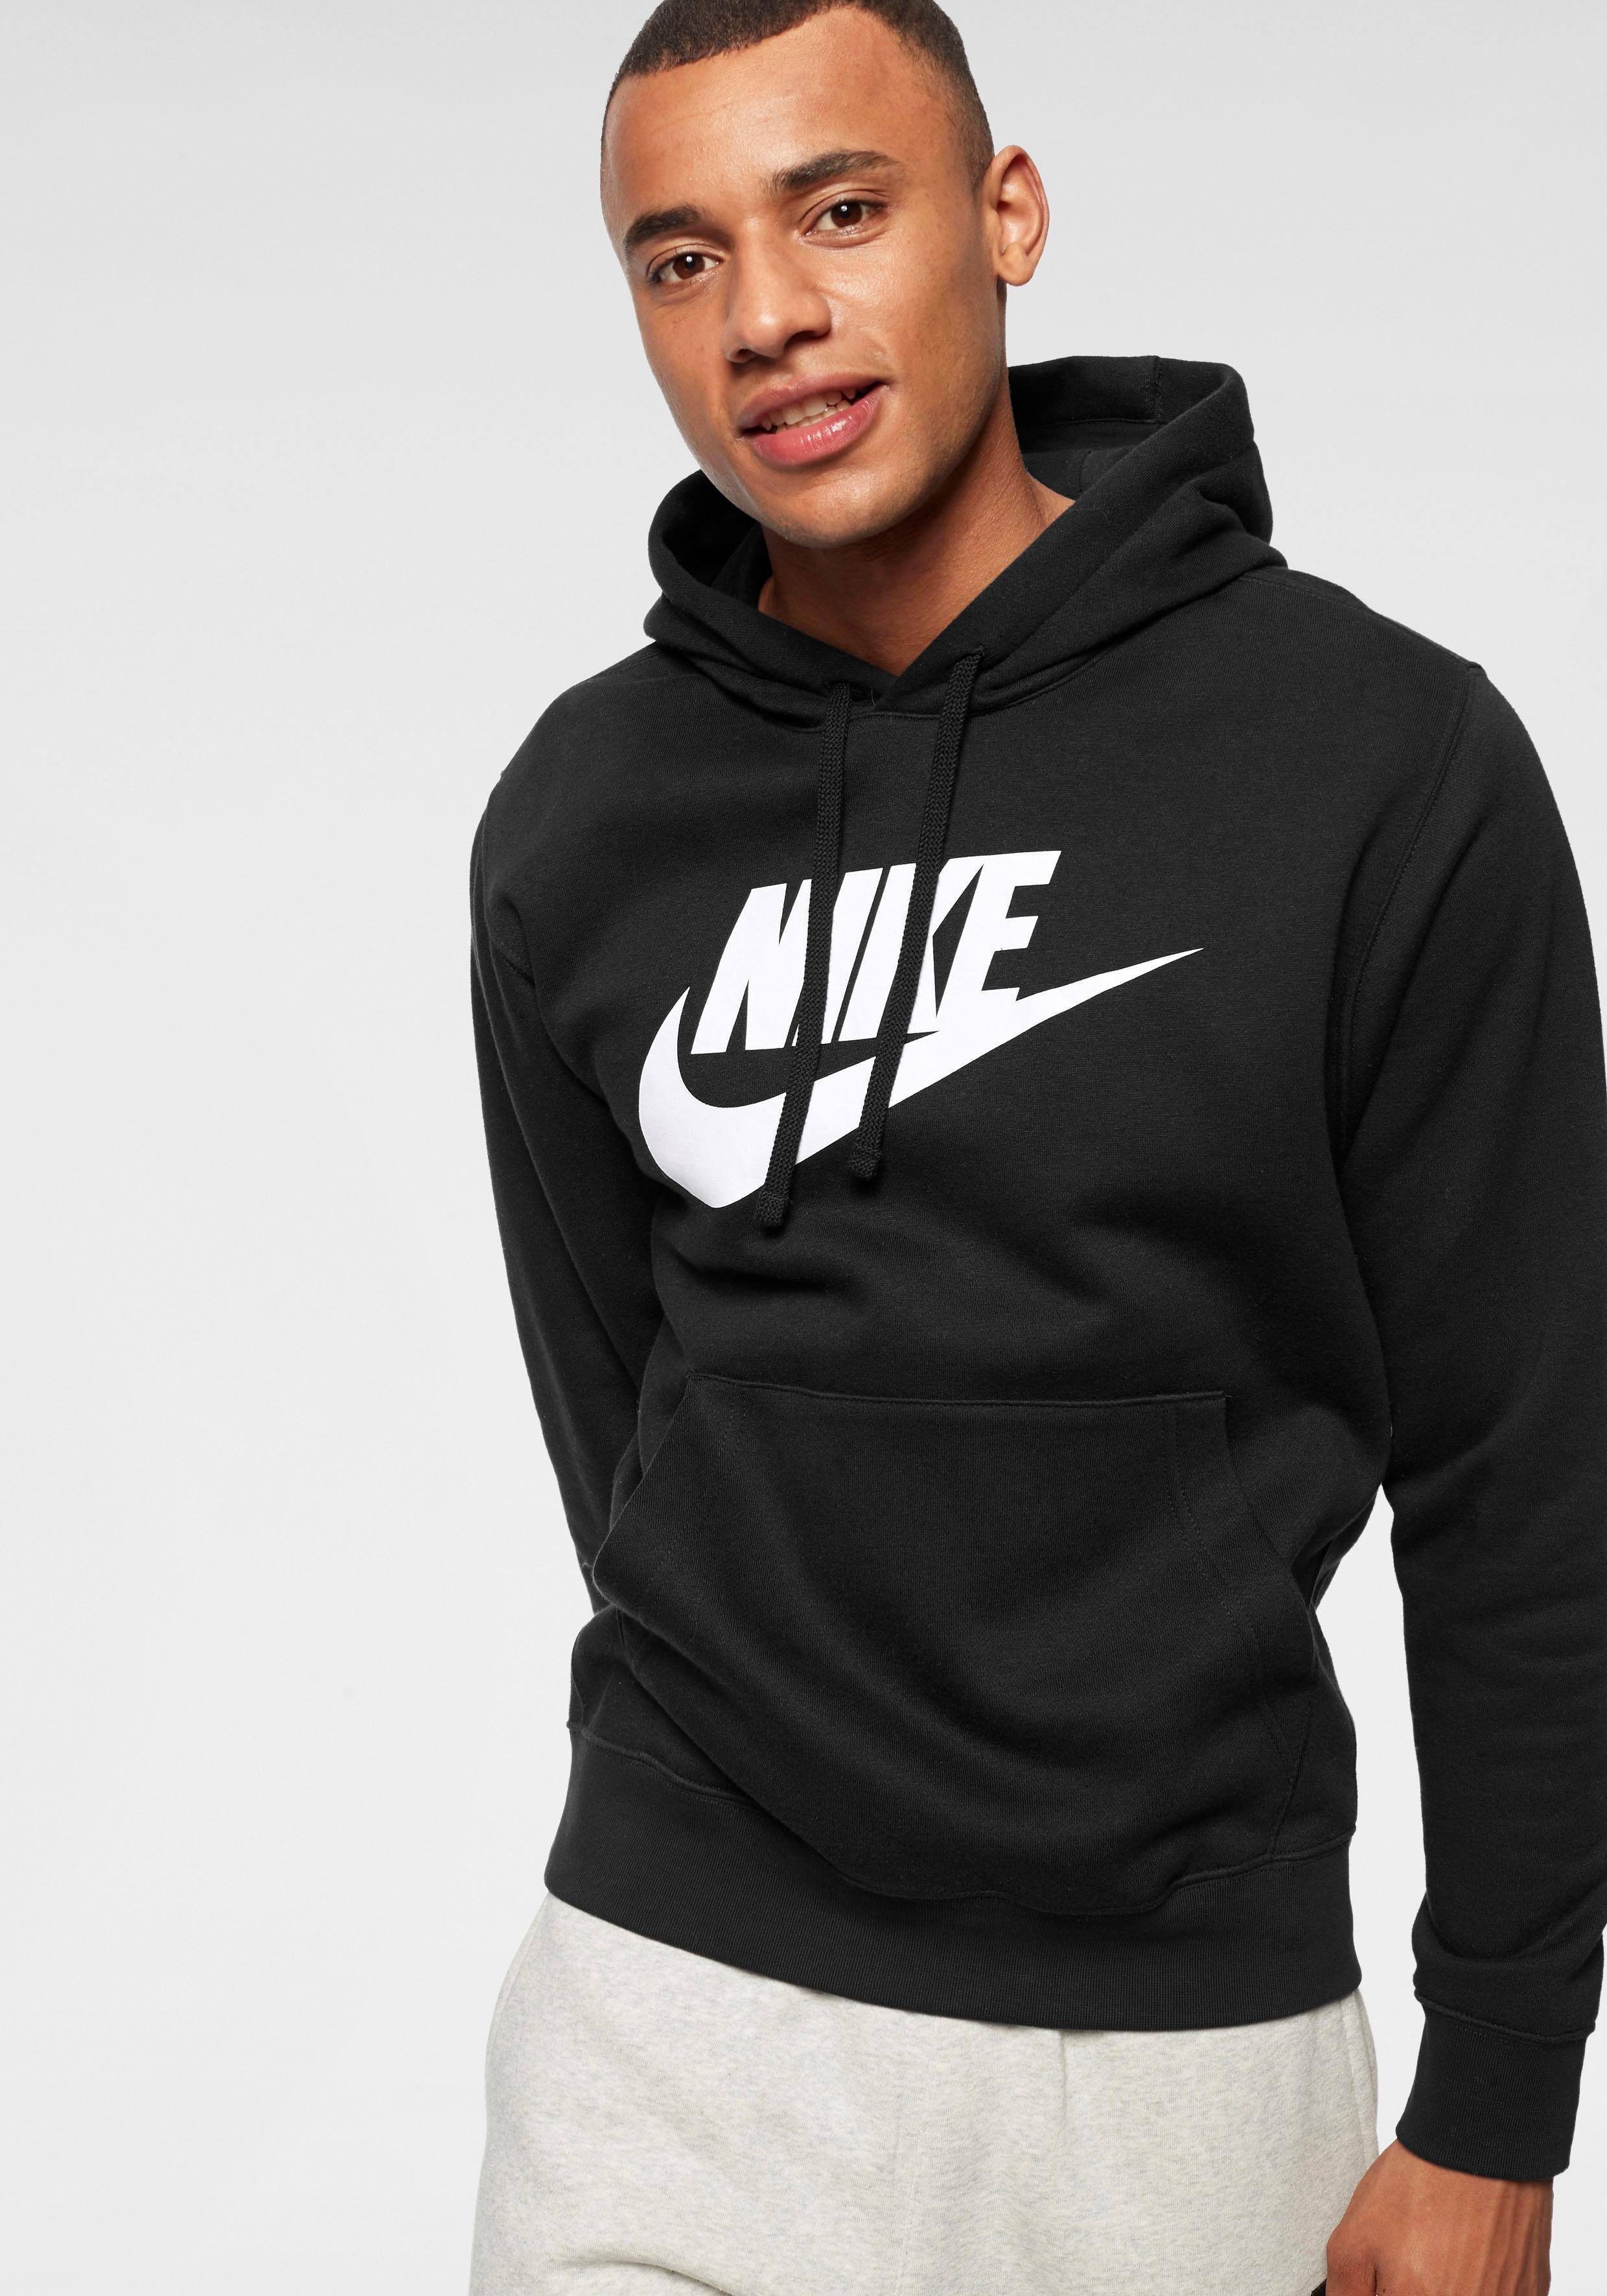 Schwarze Nike Herren Sweatshirts online kaufen | OTTO